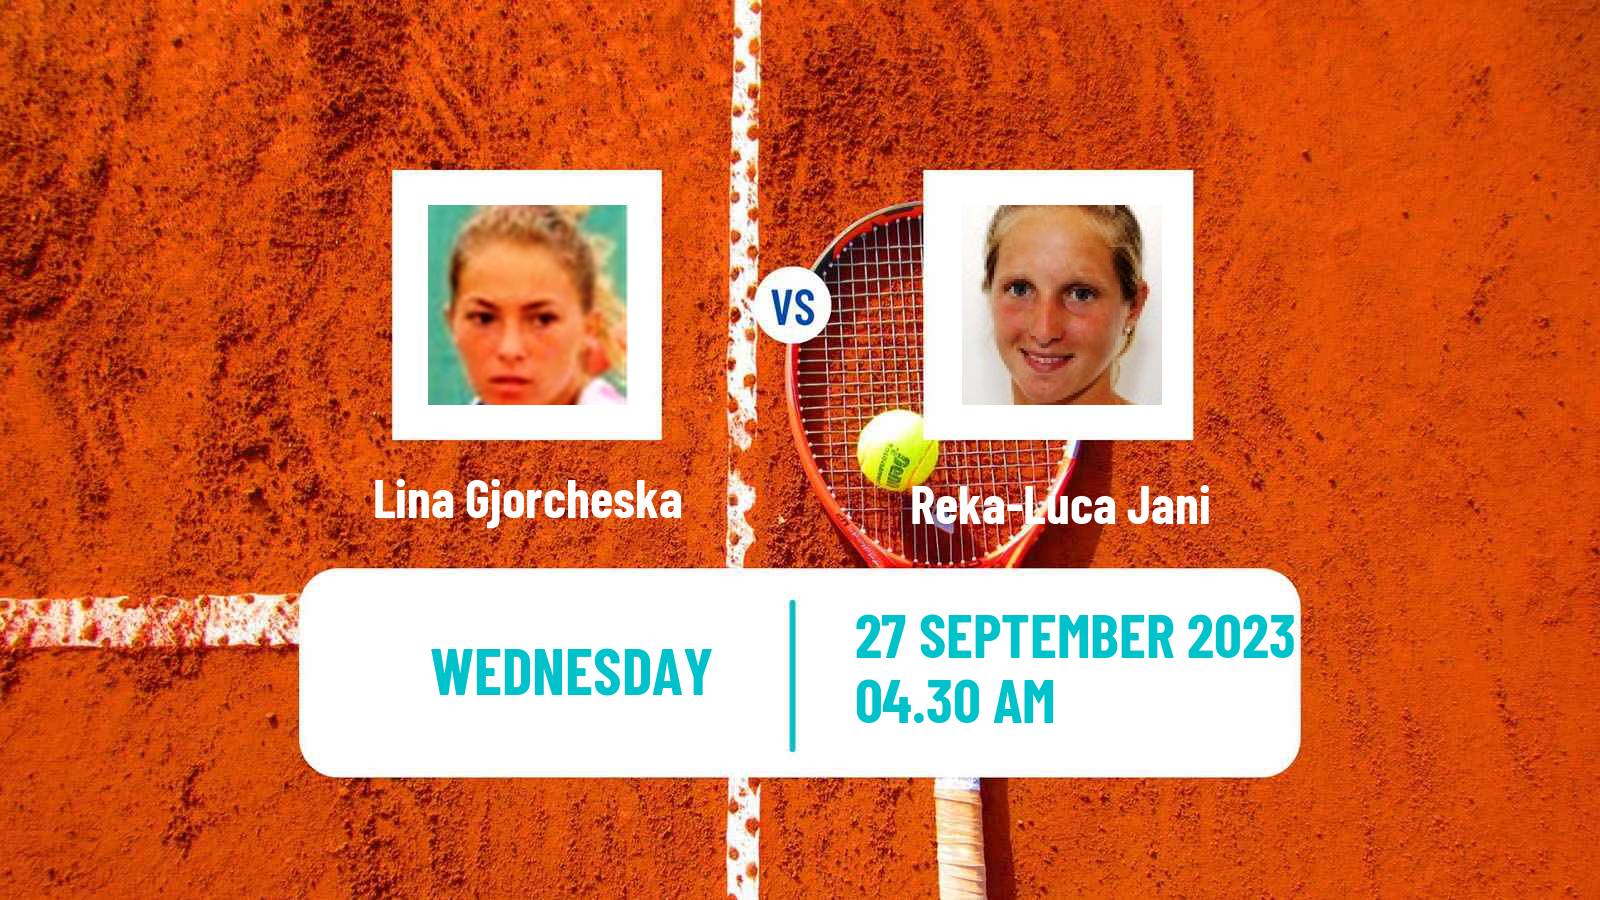 Tennis ITF W40 Kursumlijska Banja Women Lina Gjorcheska - Reka-Luca Jani